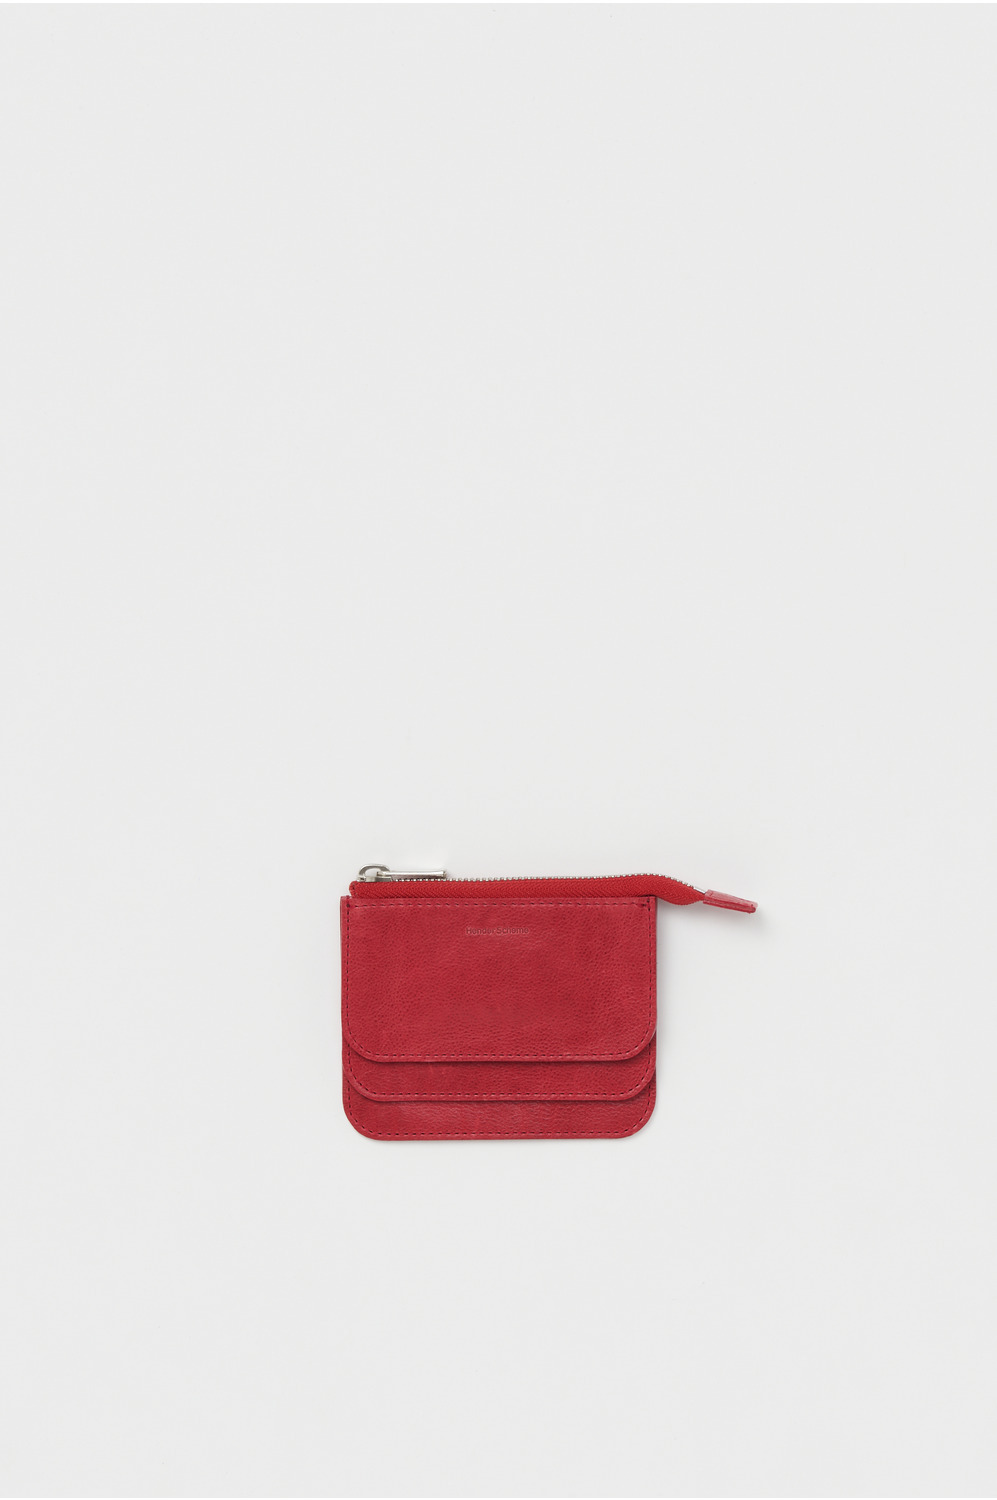 3 layered purse 詳細画像 red 1